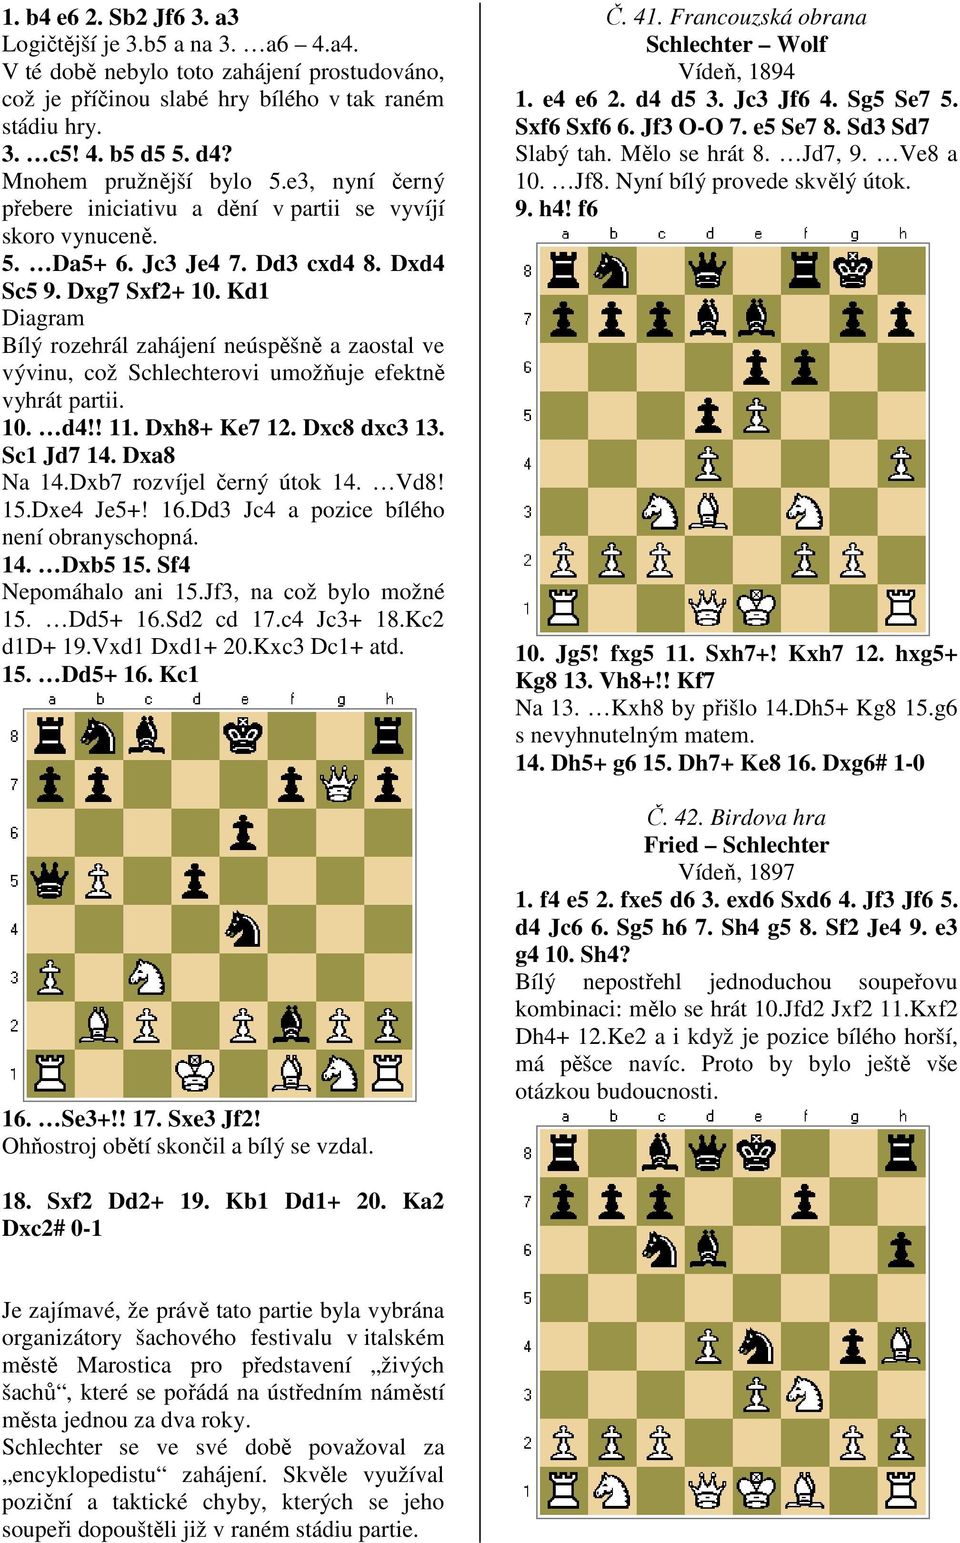 Kd1 Diagram Bílý rozehrál zahájení neúspěšně a zaostal ve vývinu, což Schlechterovi umožňuje efektně vyhrát partii. 10. d4!! 11. Dxh8+ Ke7 12. Dxc8 dxc3 13. Sc1 Jd7 14. Dxa8 Na 14.